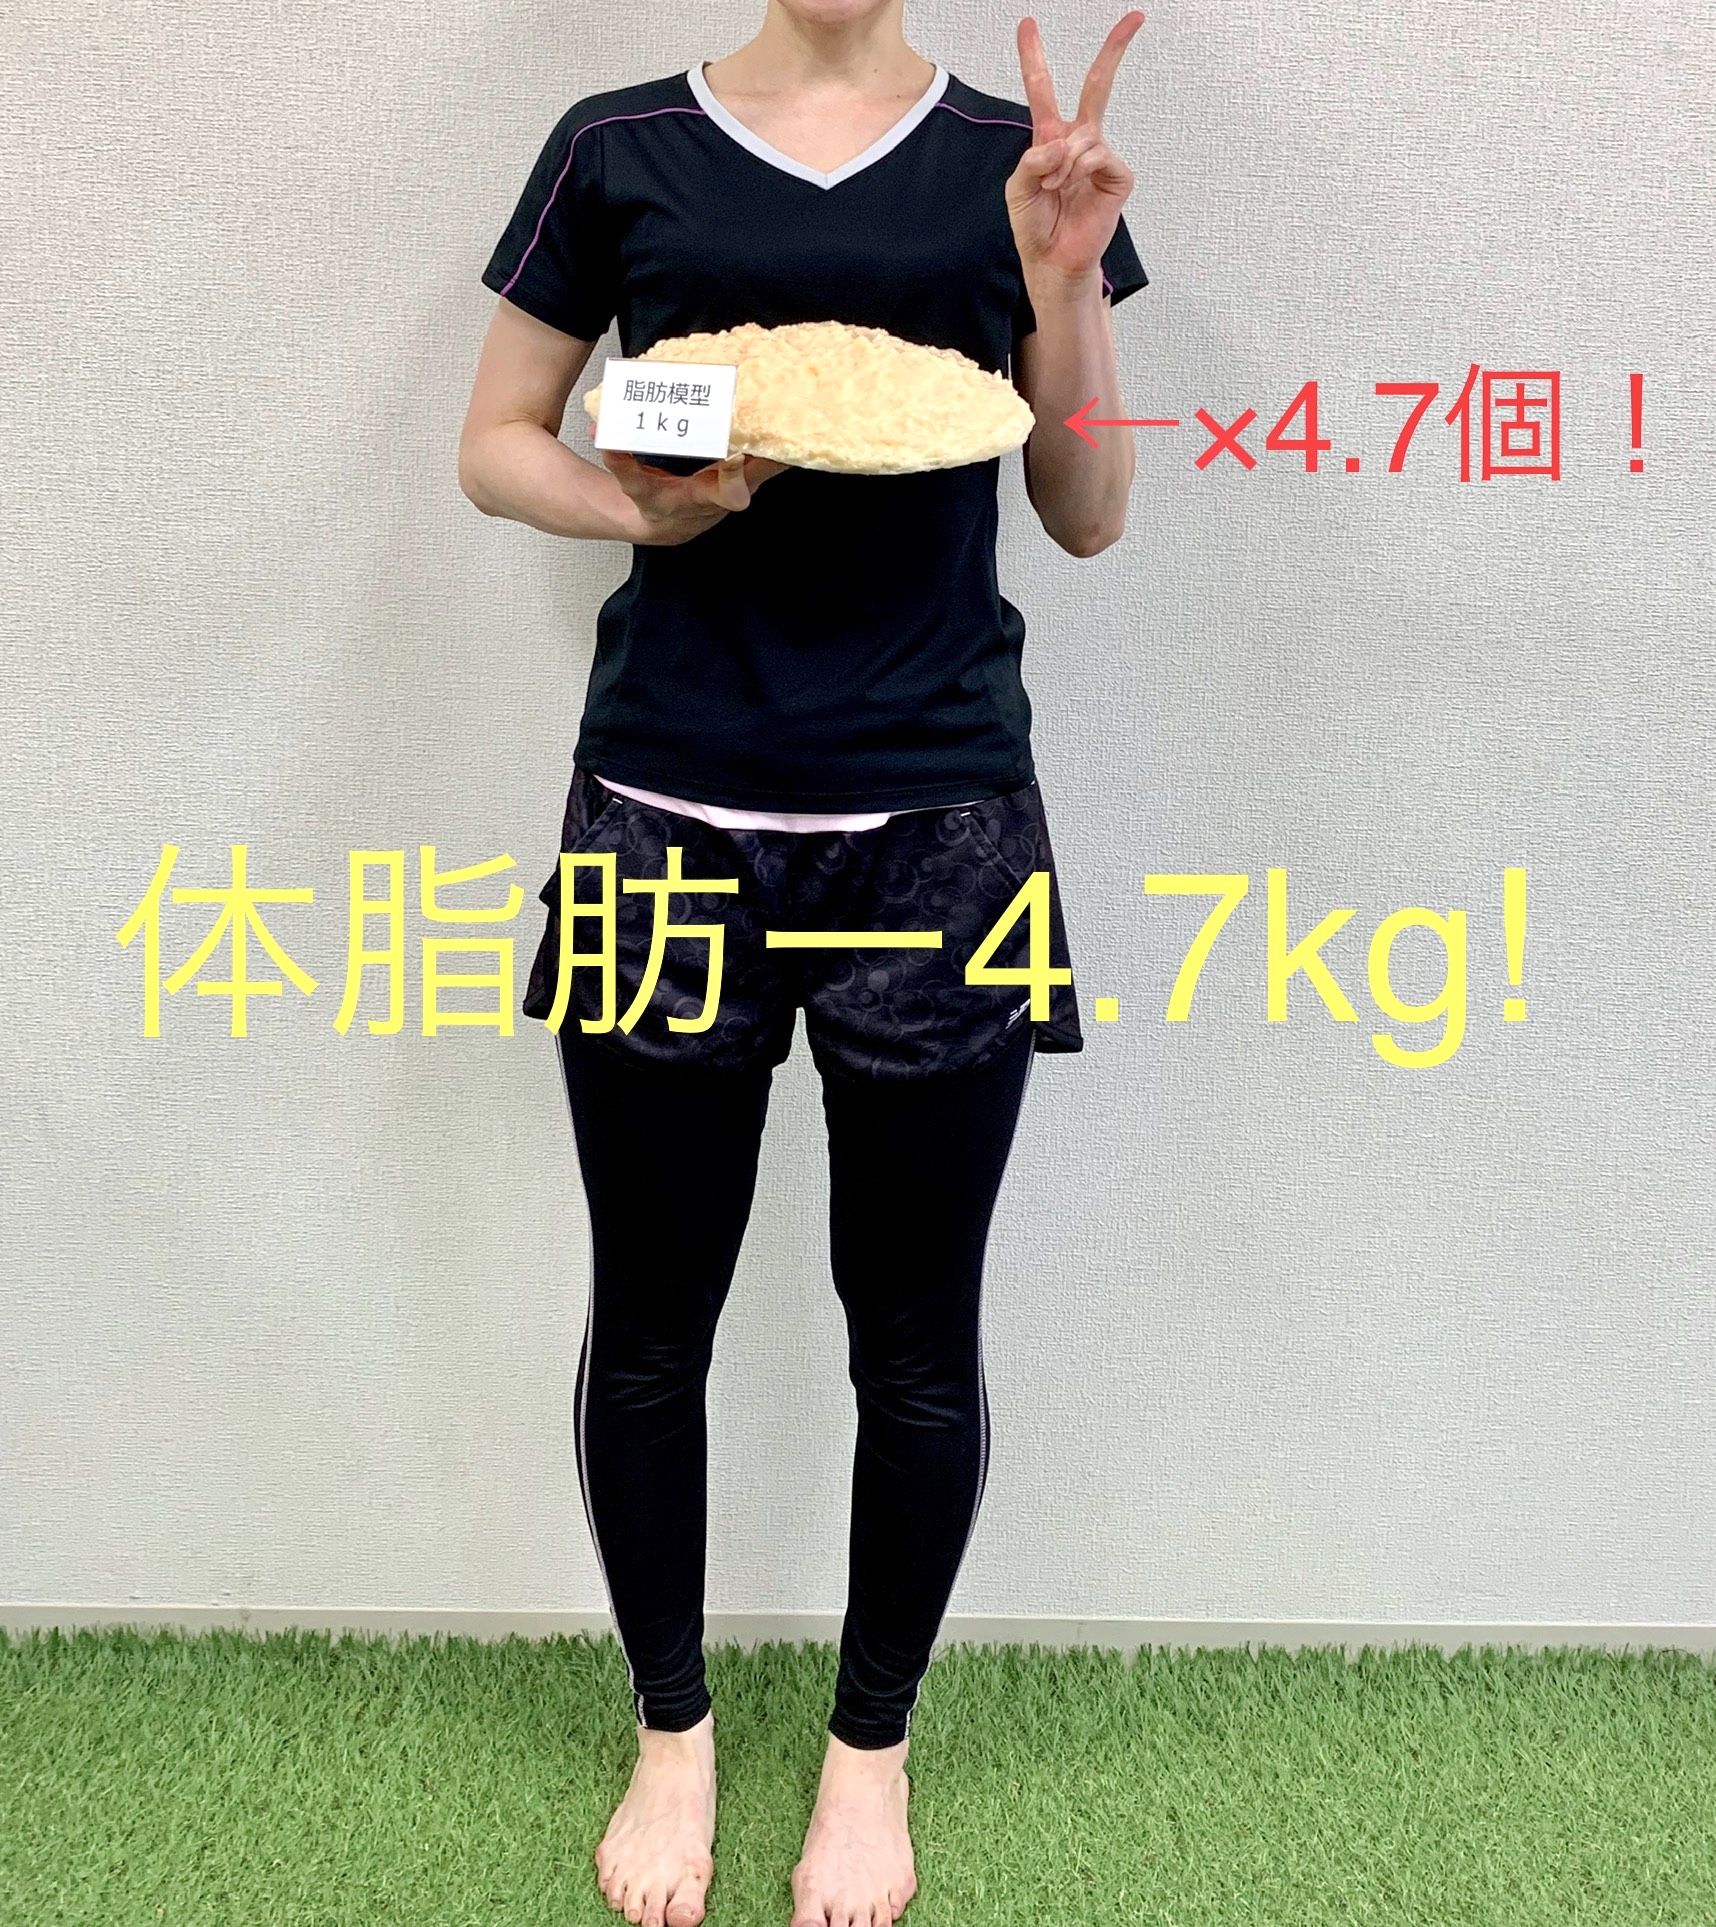 30代女性がピースサイン 体脂肪 -4.7kg